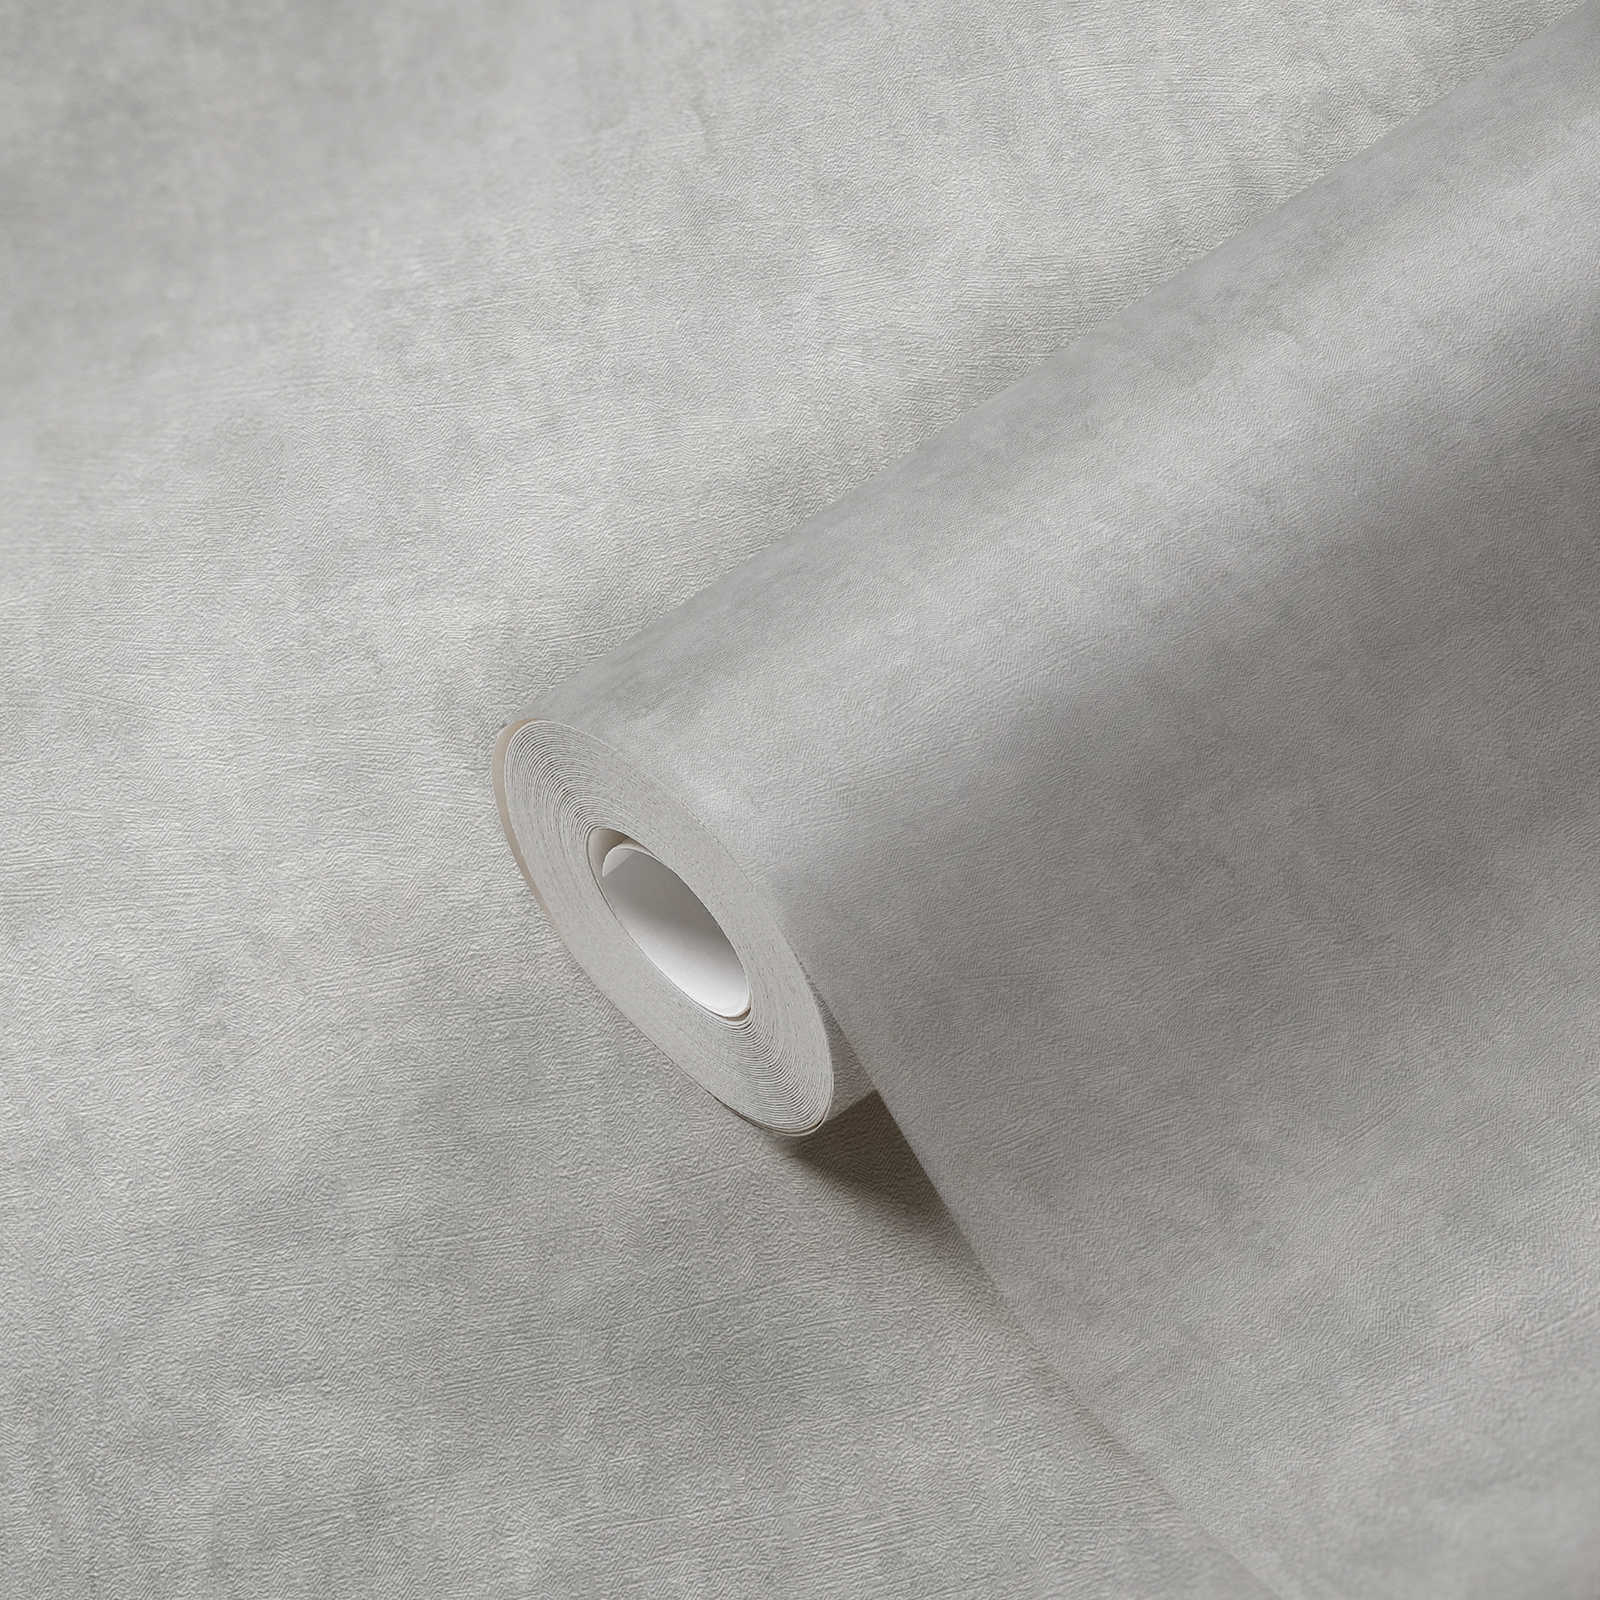             Papier peint intissé avec motif structuré - gris
        